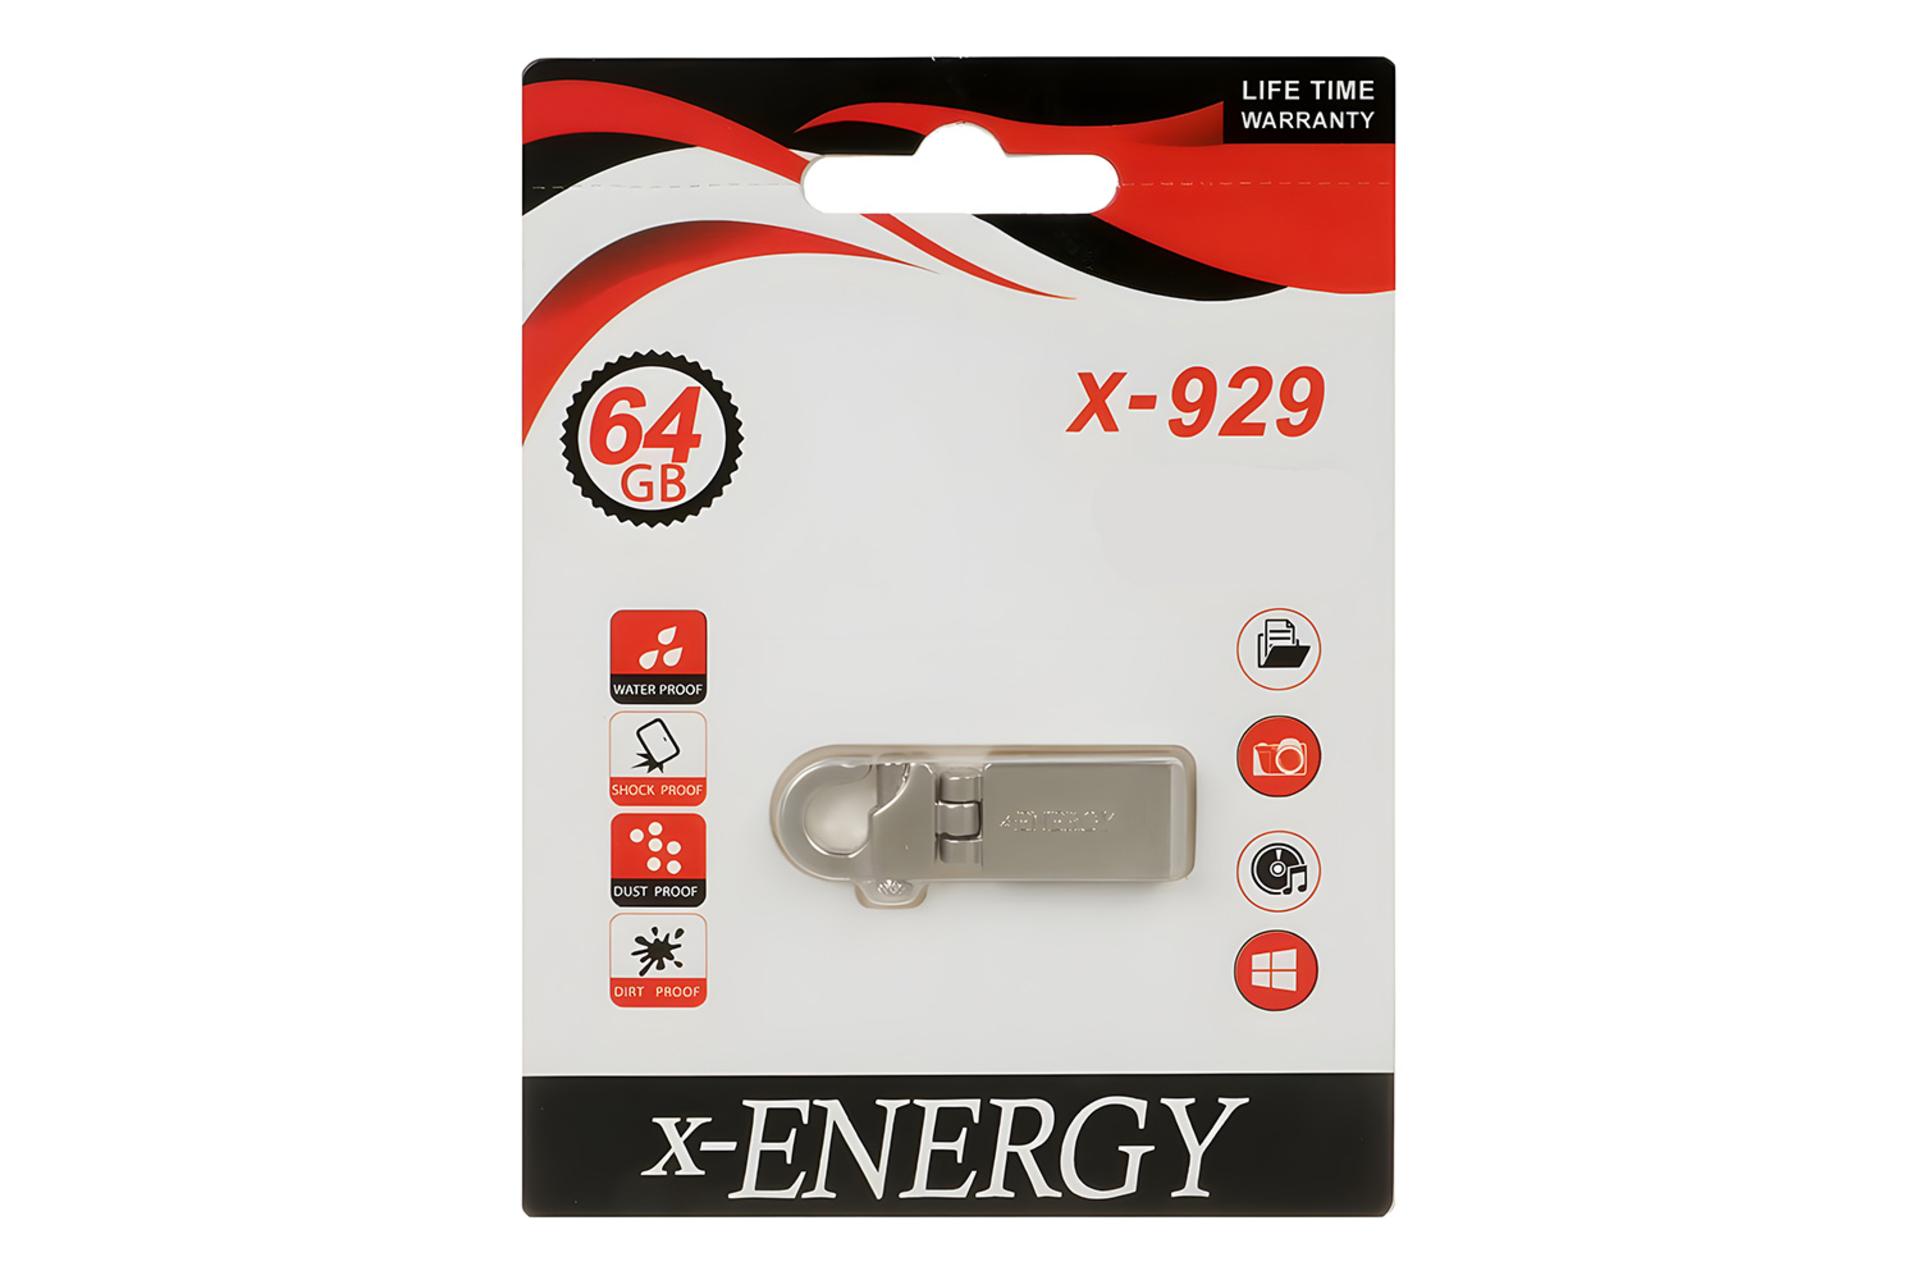 جعبه فلش مموری ایکس انرژی x-Energy X-929 64GB USB 2.0